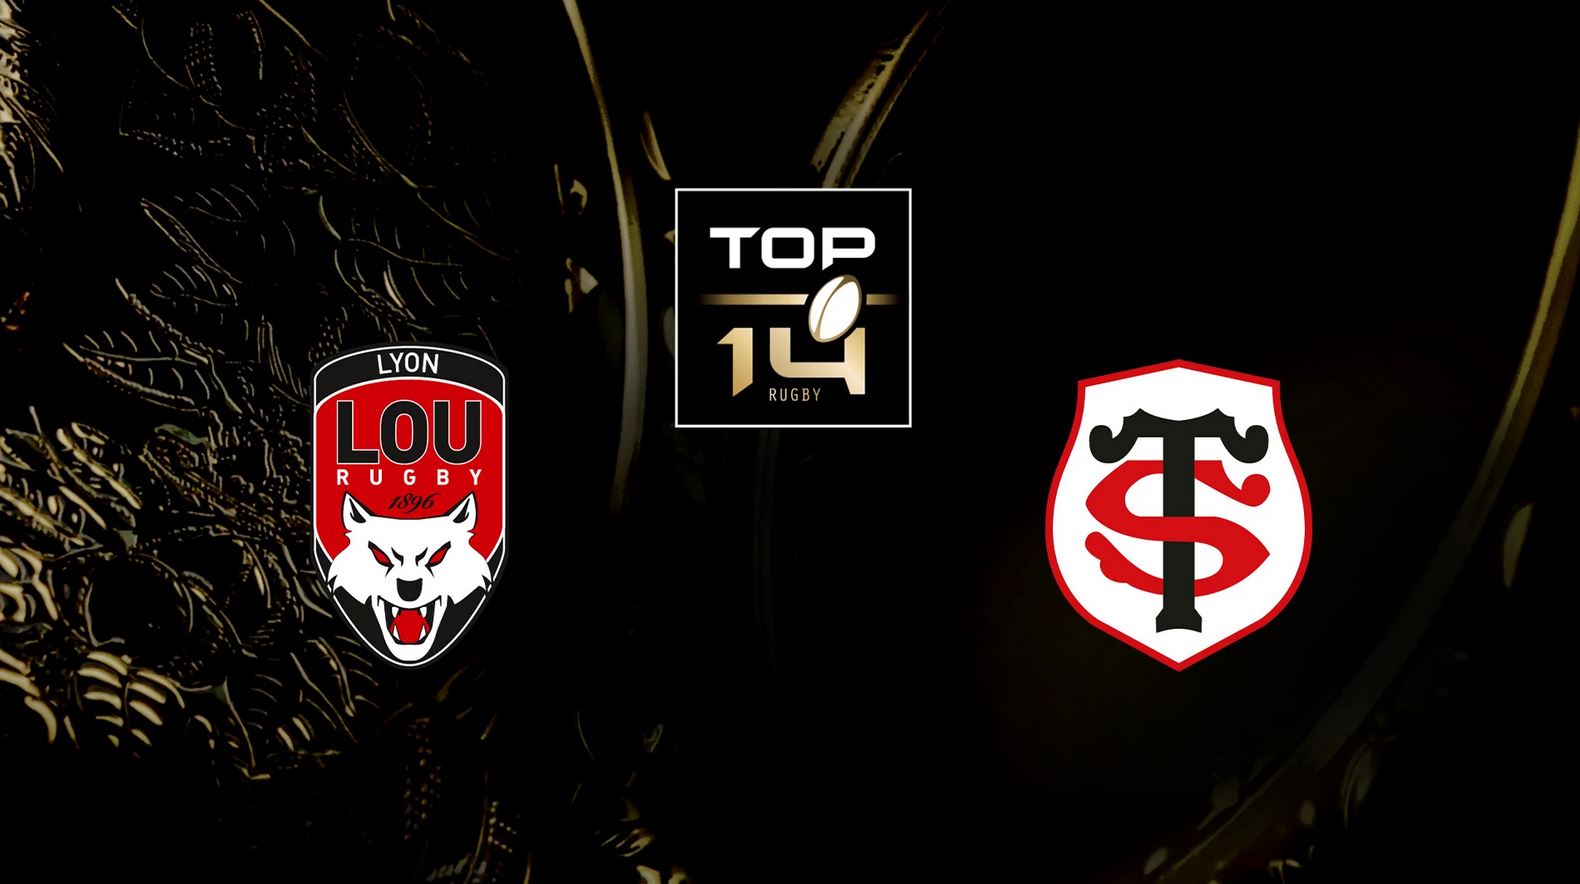 Lyon (LOU) / Toulouse (ST) (TV/Streaming) Sur quelle chaine et à quelle heure regarder le match de Top 14 ?